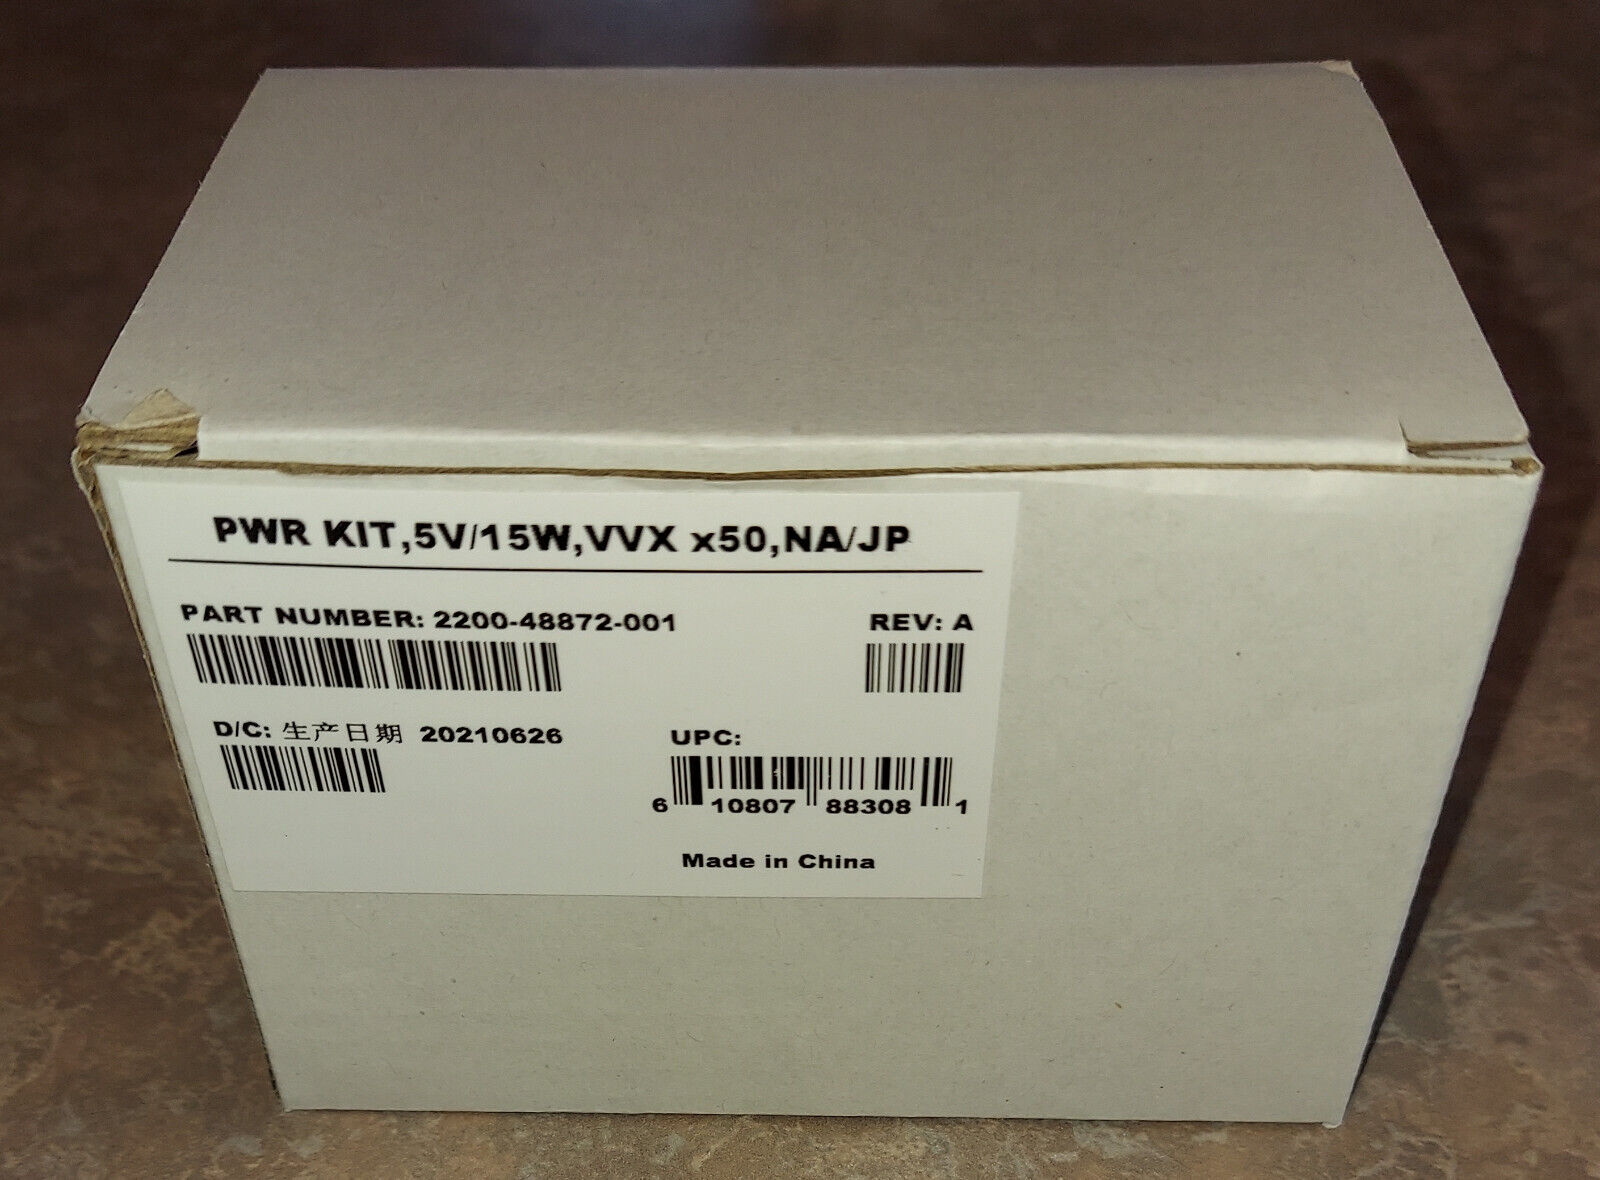 Polycom Power Kit, 2200-48872-001, 5v/15w,3Amp  VVX x50, NA/JP